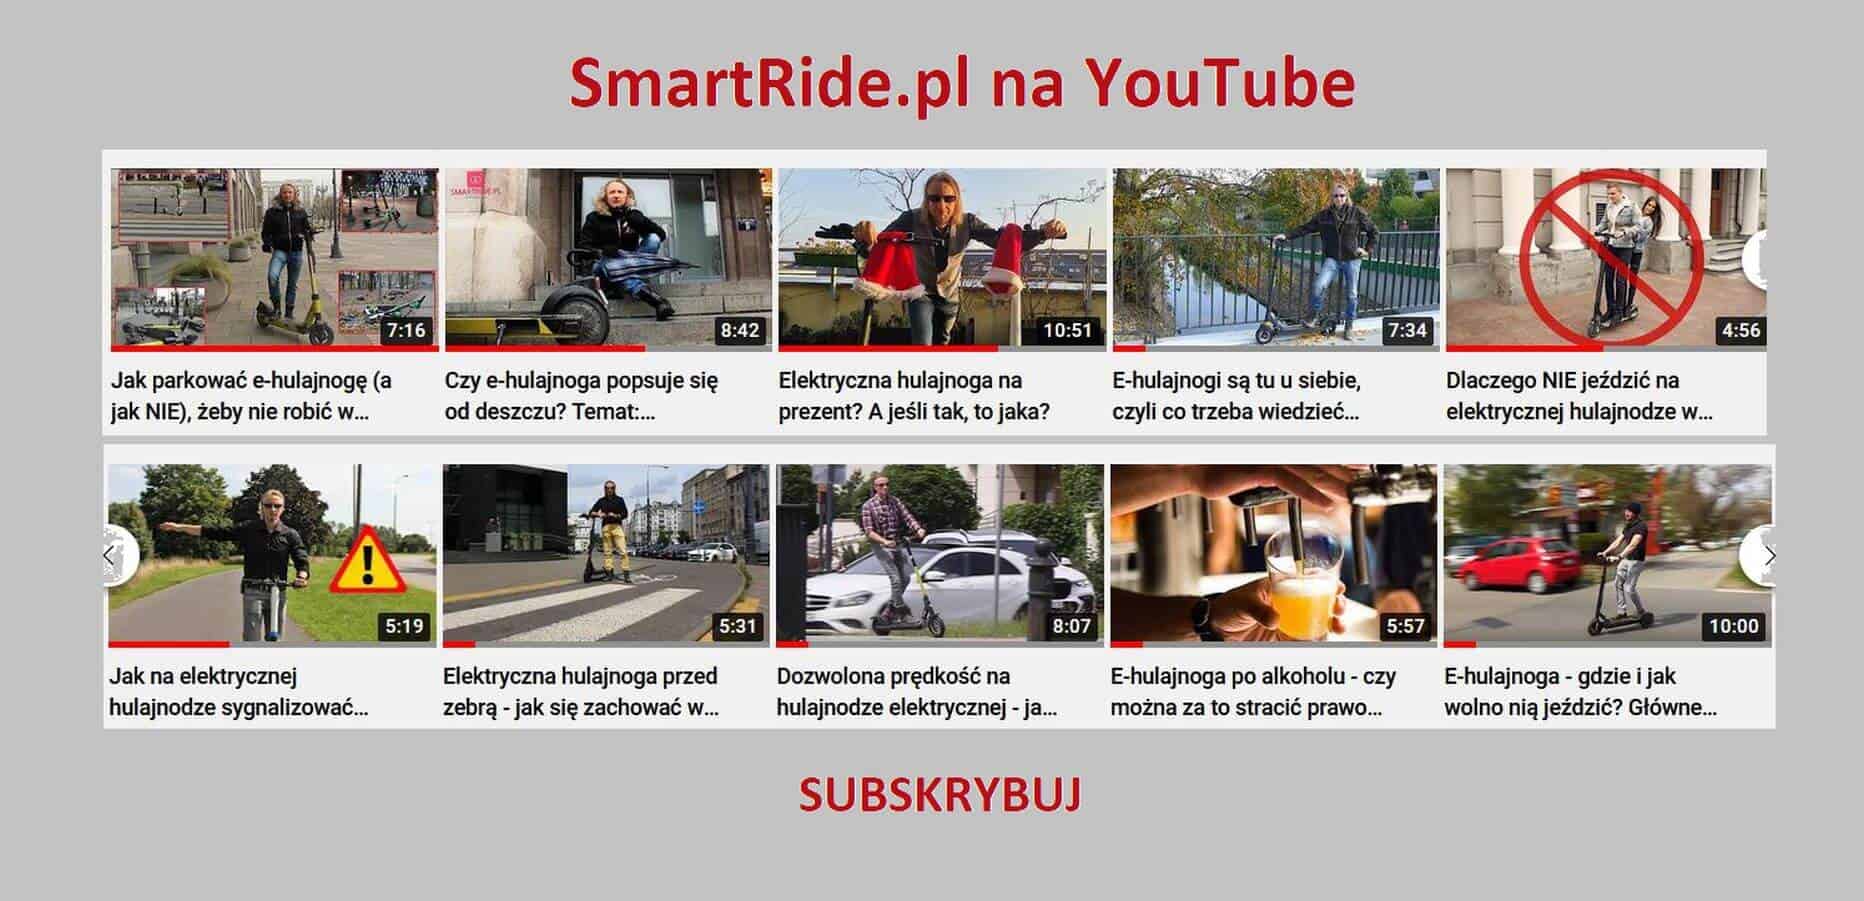 SmartRid.pl na YouTube